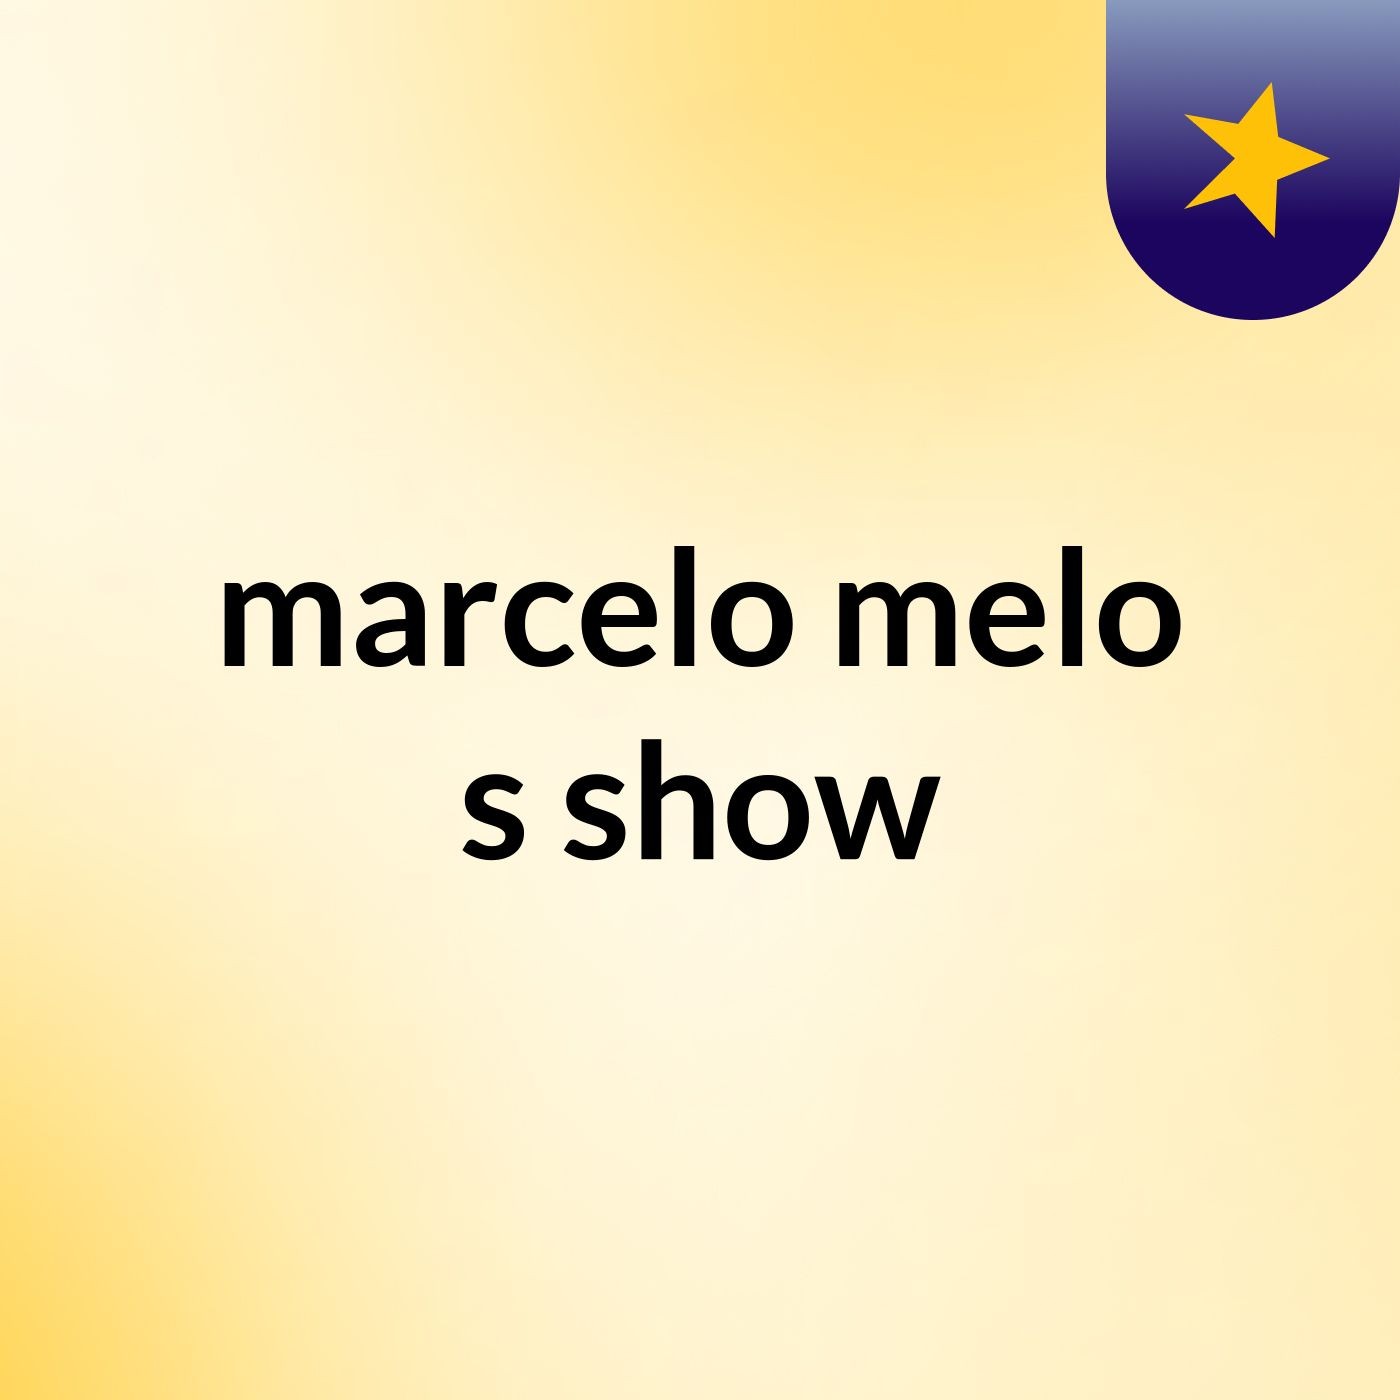 marcelo melo's show